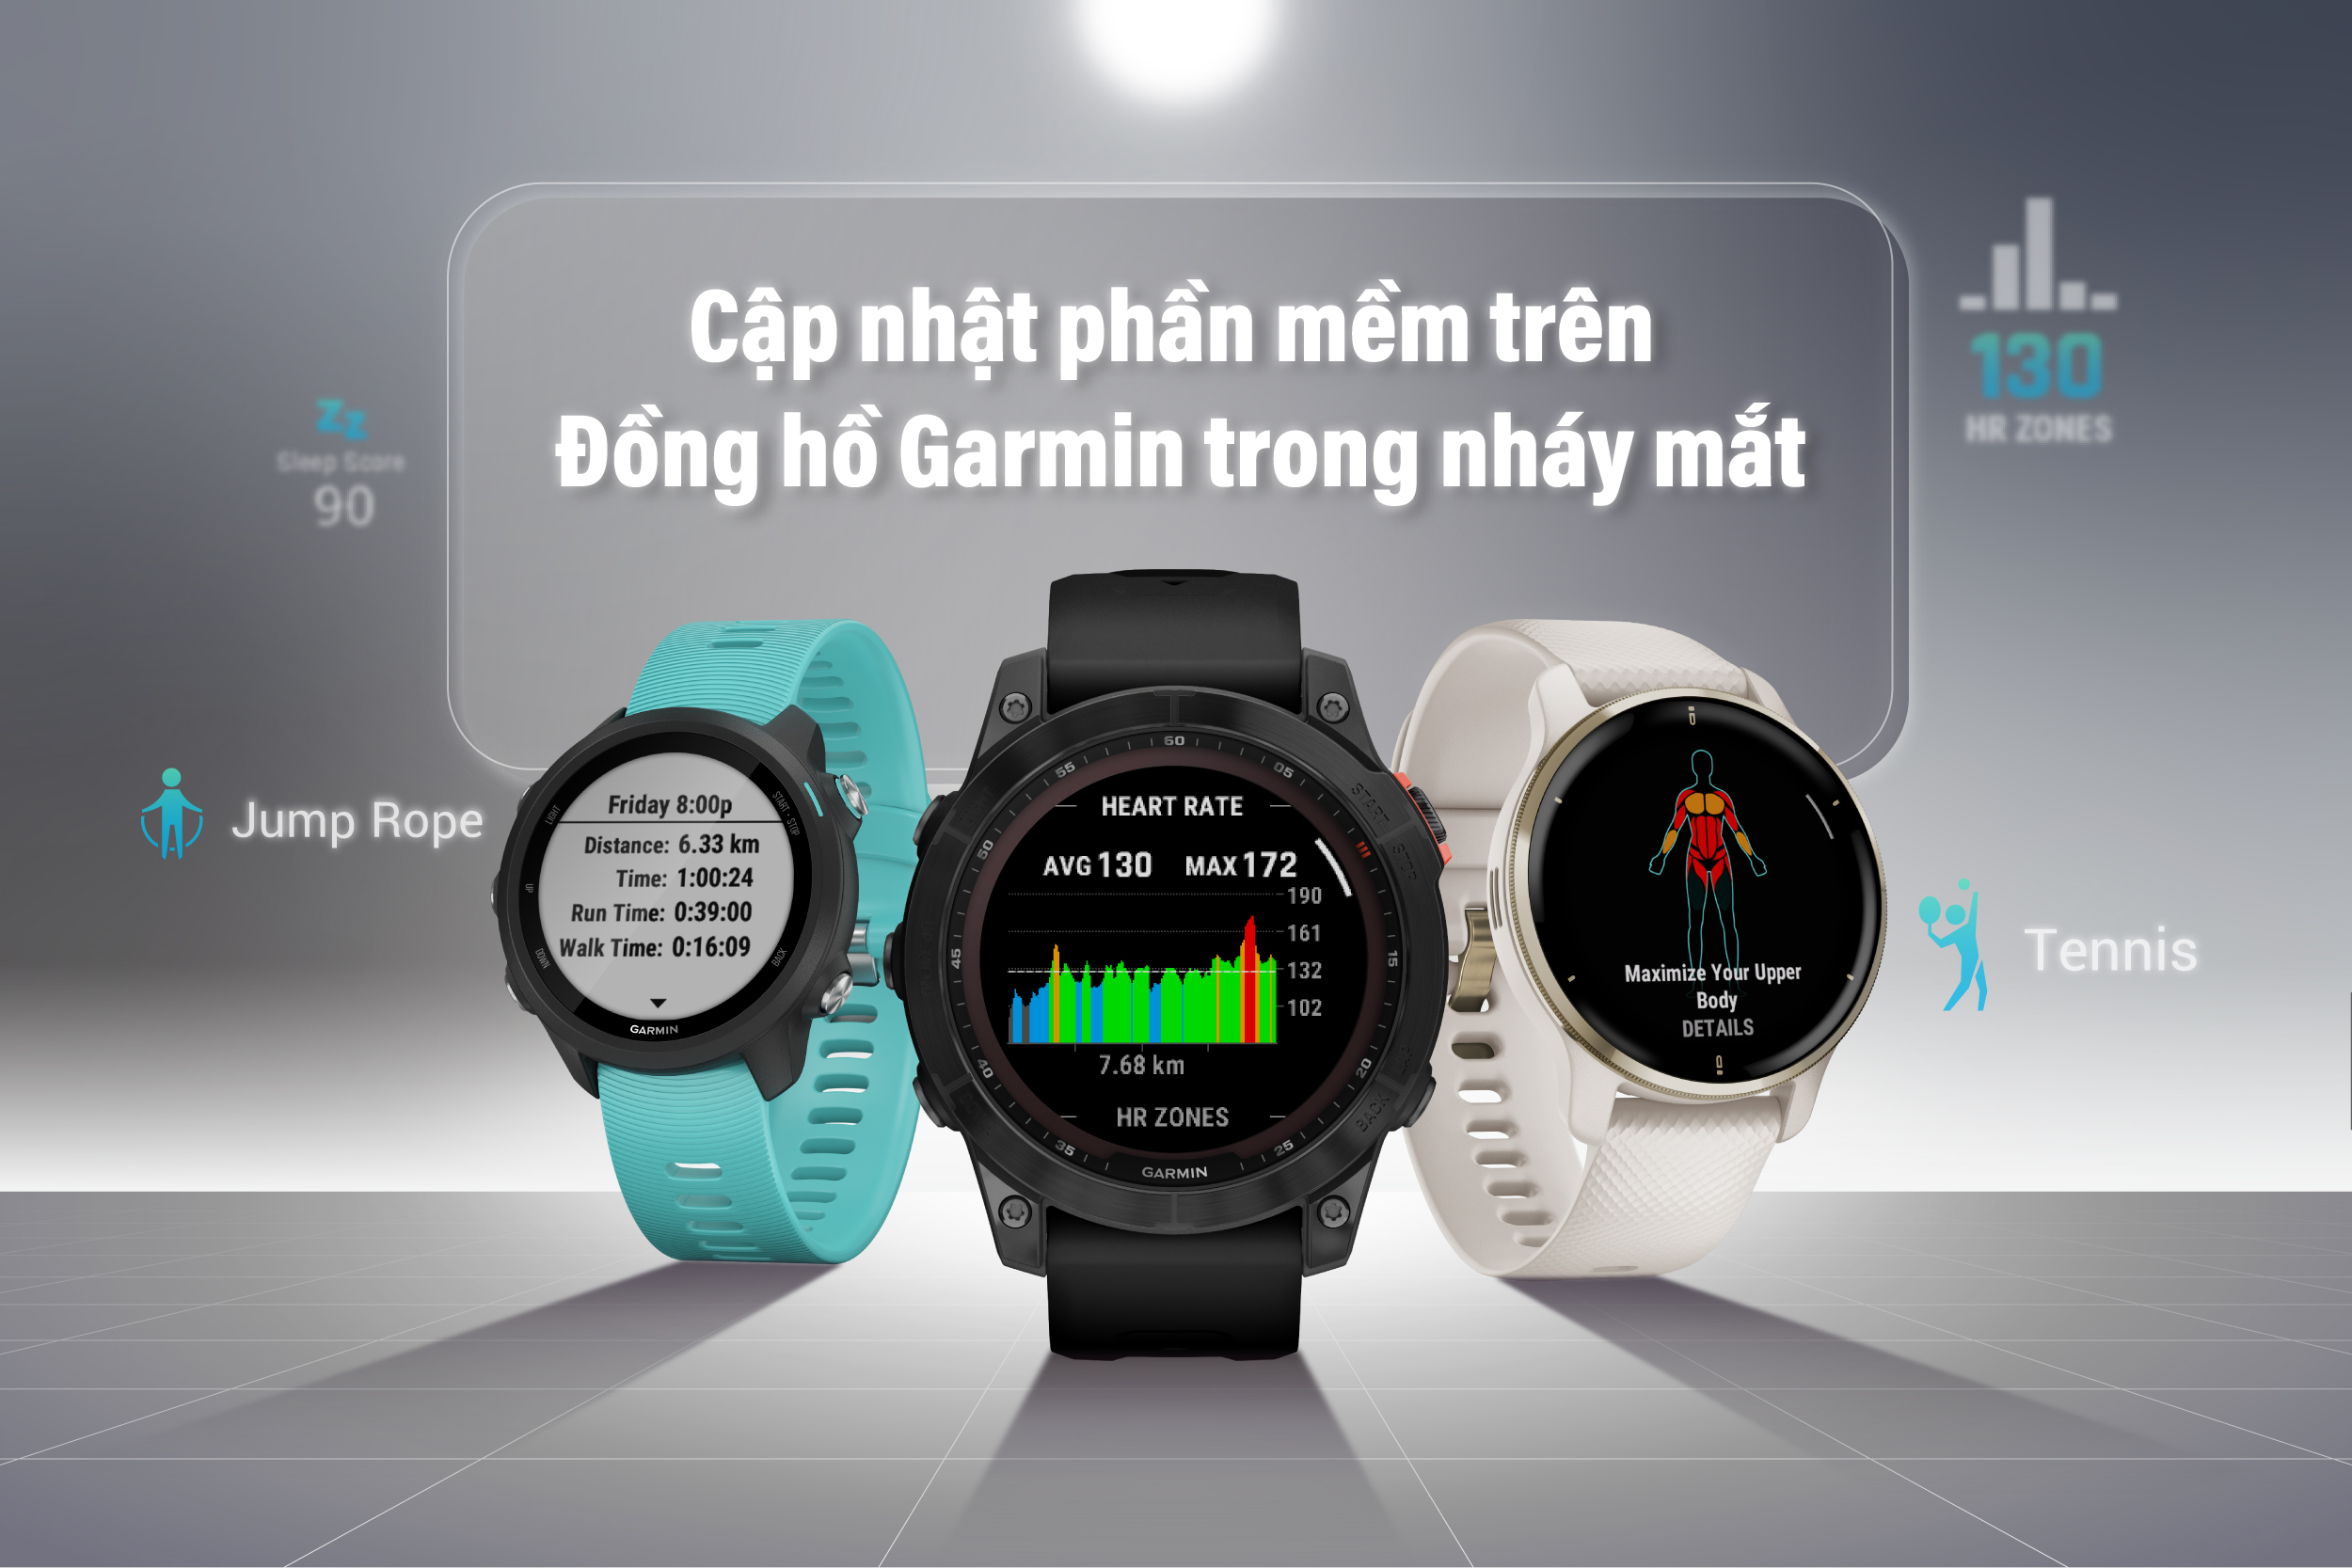 Garmin ra mắt bản cập nhật phần mềm mới nhất, cải tiến tính năng theo dõi sức khoẻ và giao diện người dùng